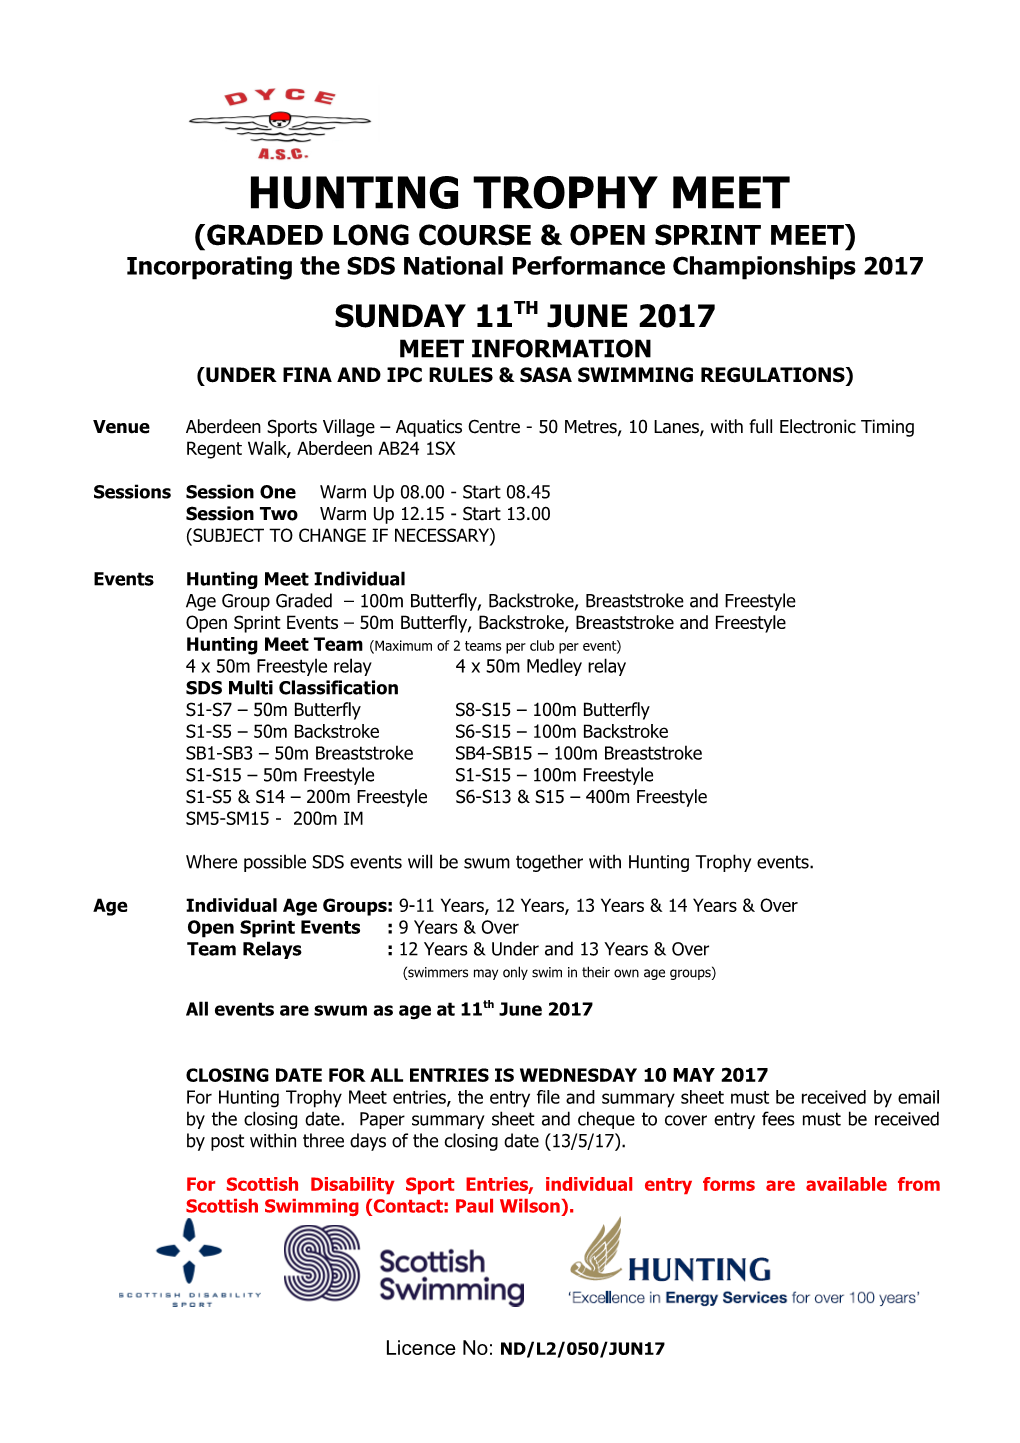 Graded Long Course & Open Sprint Meet